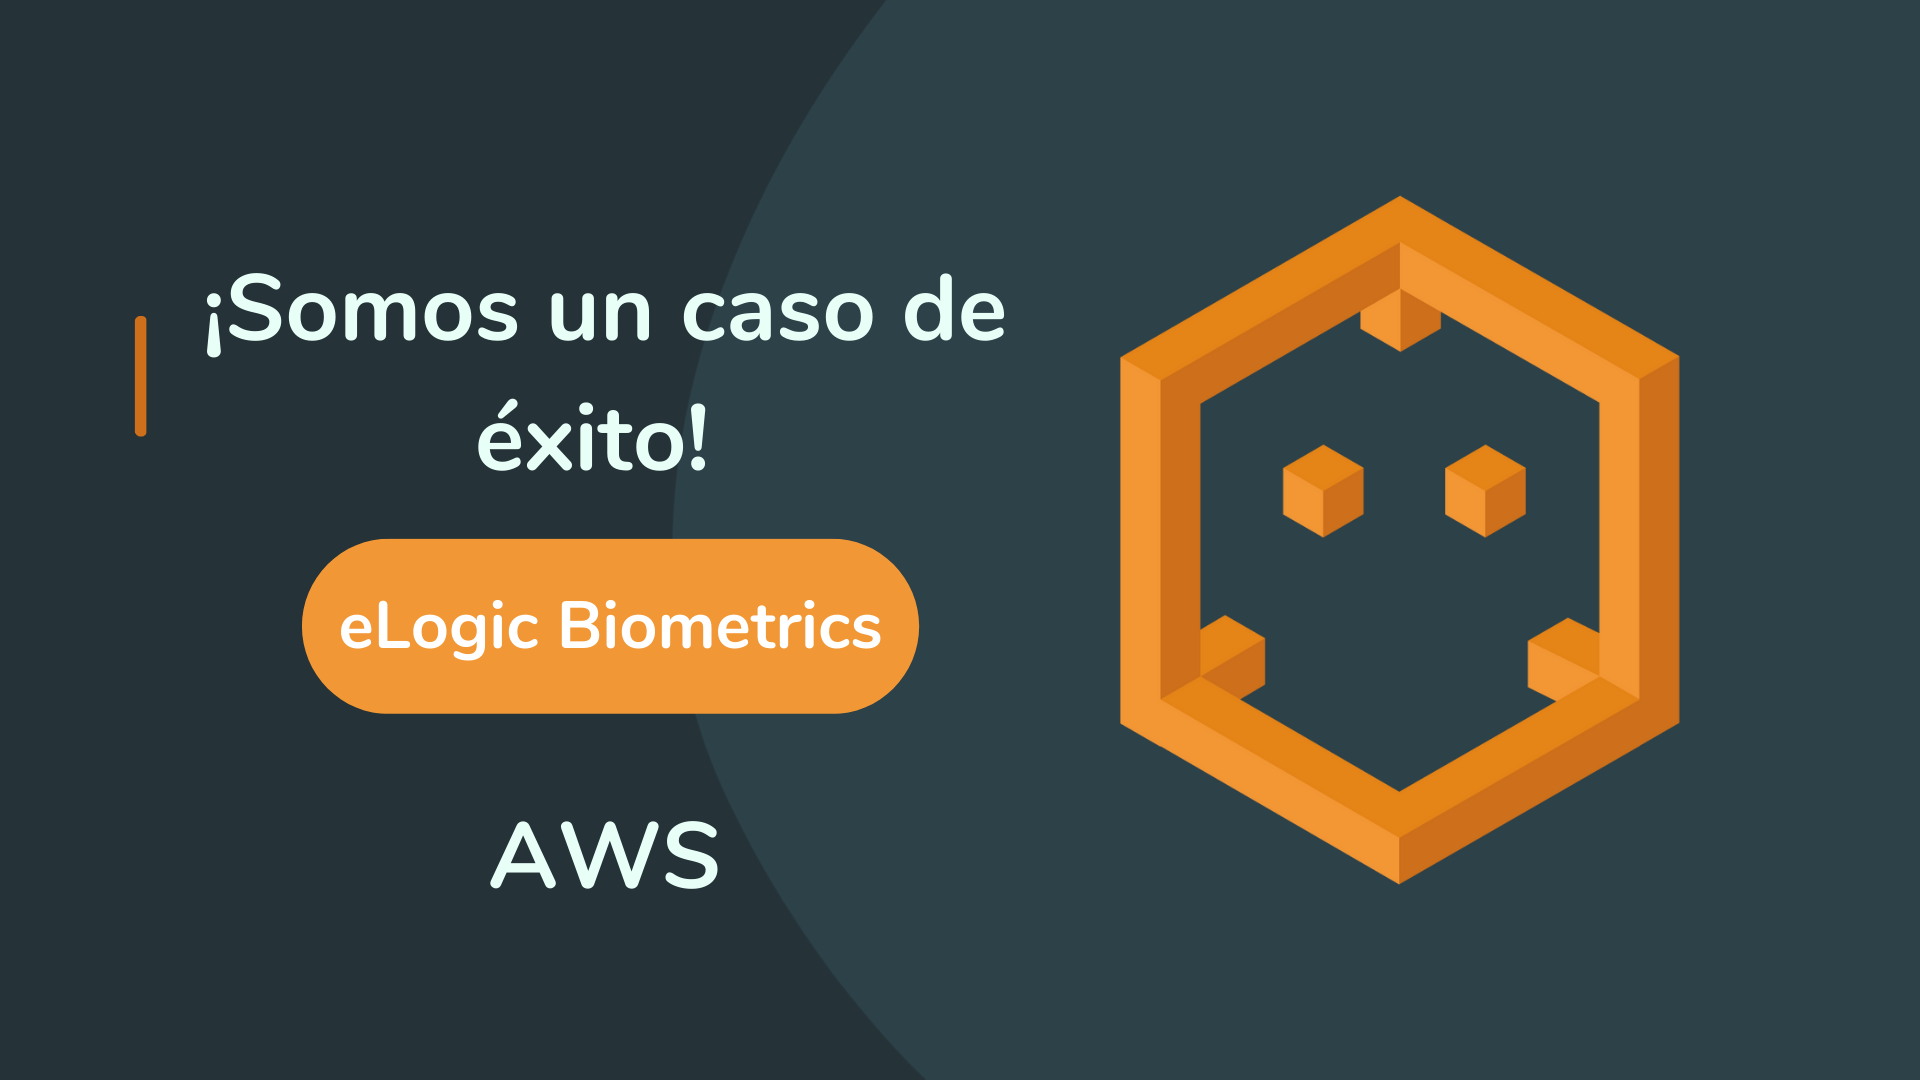 eLogic Biometrics es una solución eficiente de verificación biométrica y documental soportada en Amazon Web Services (AWS)